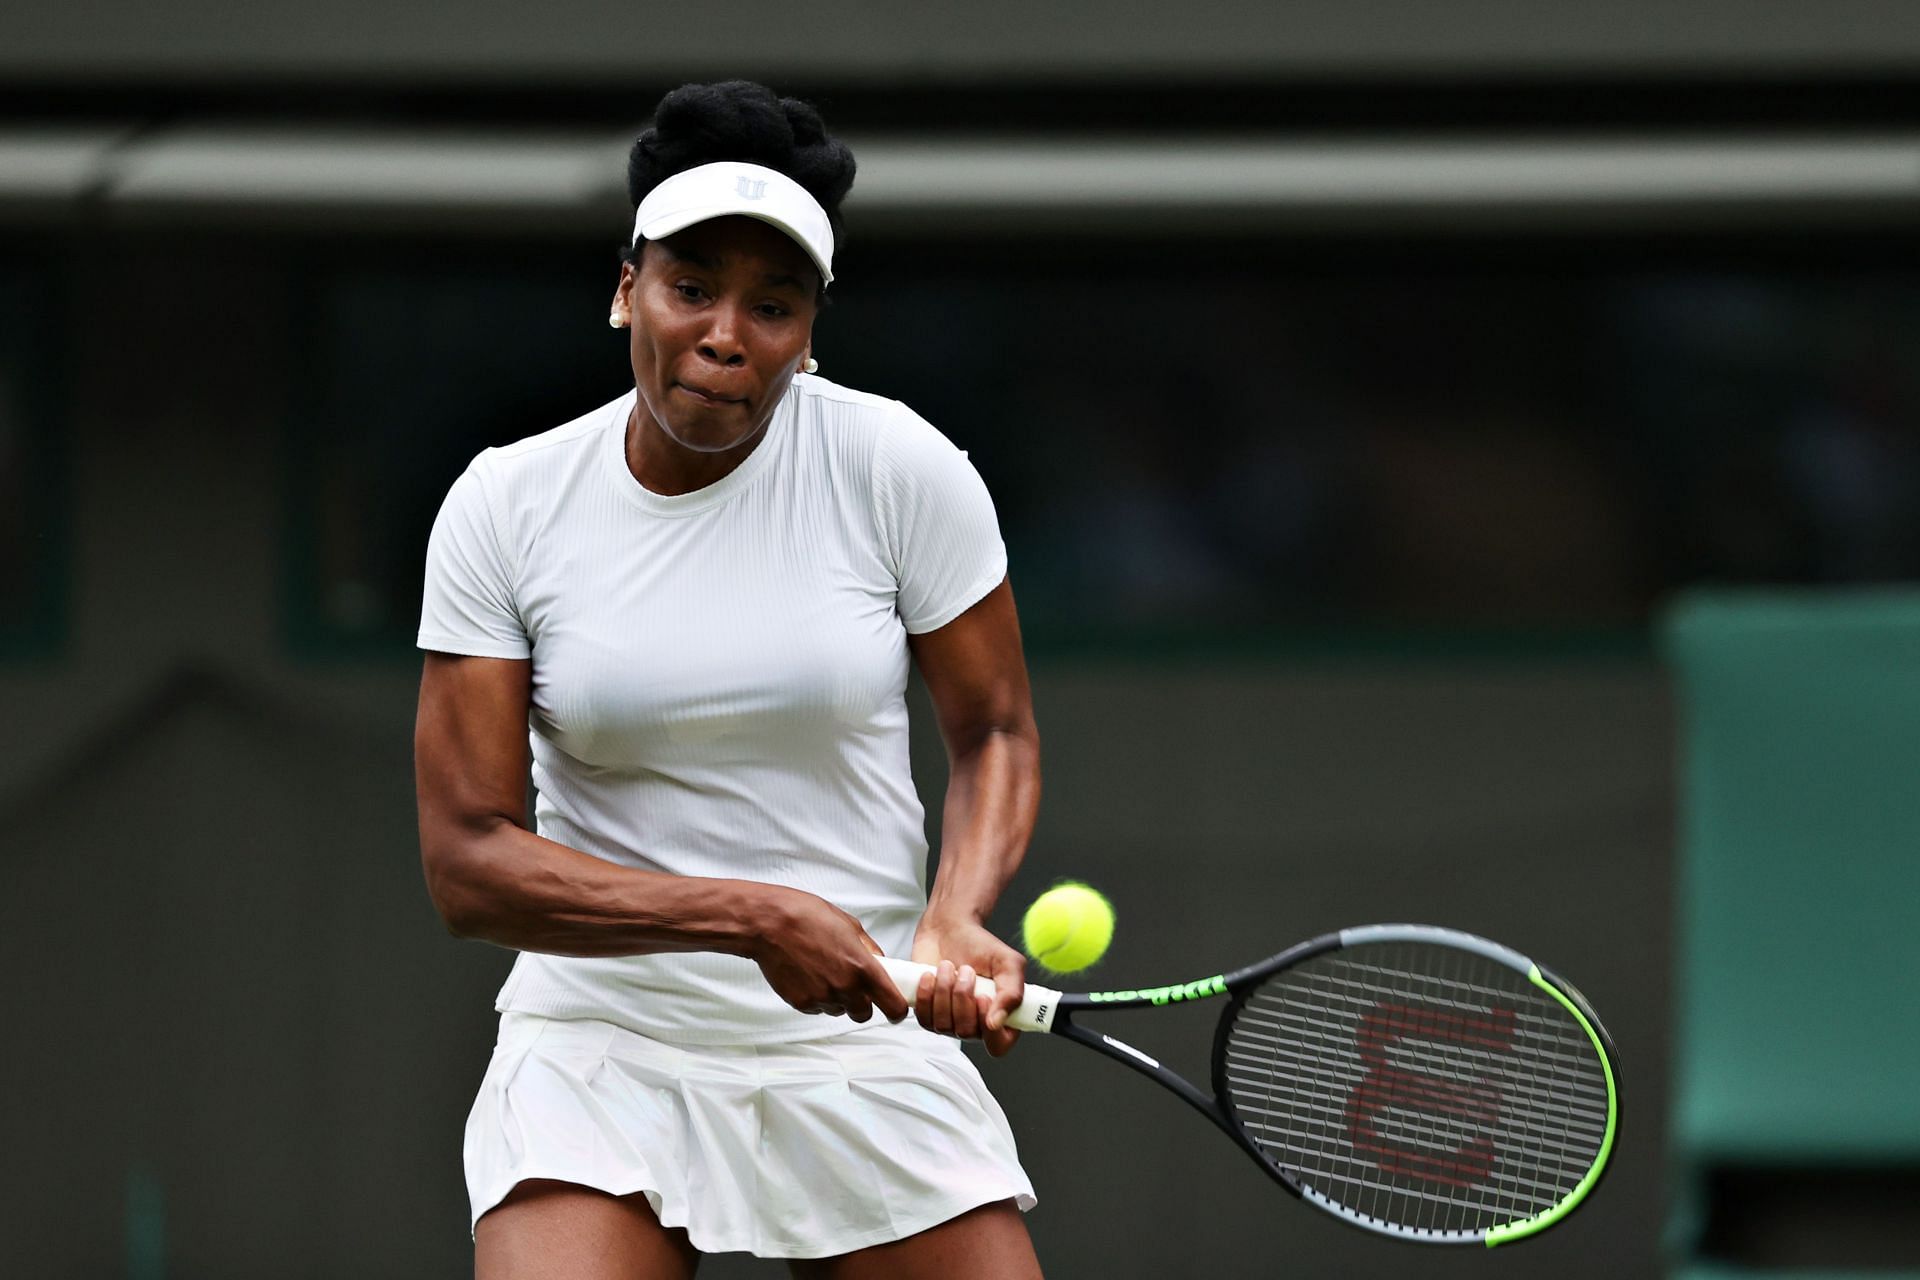 Venus Williams at the Wimbledon 2021